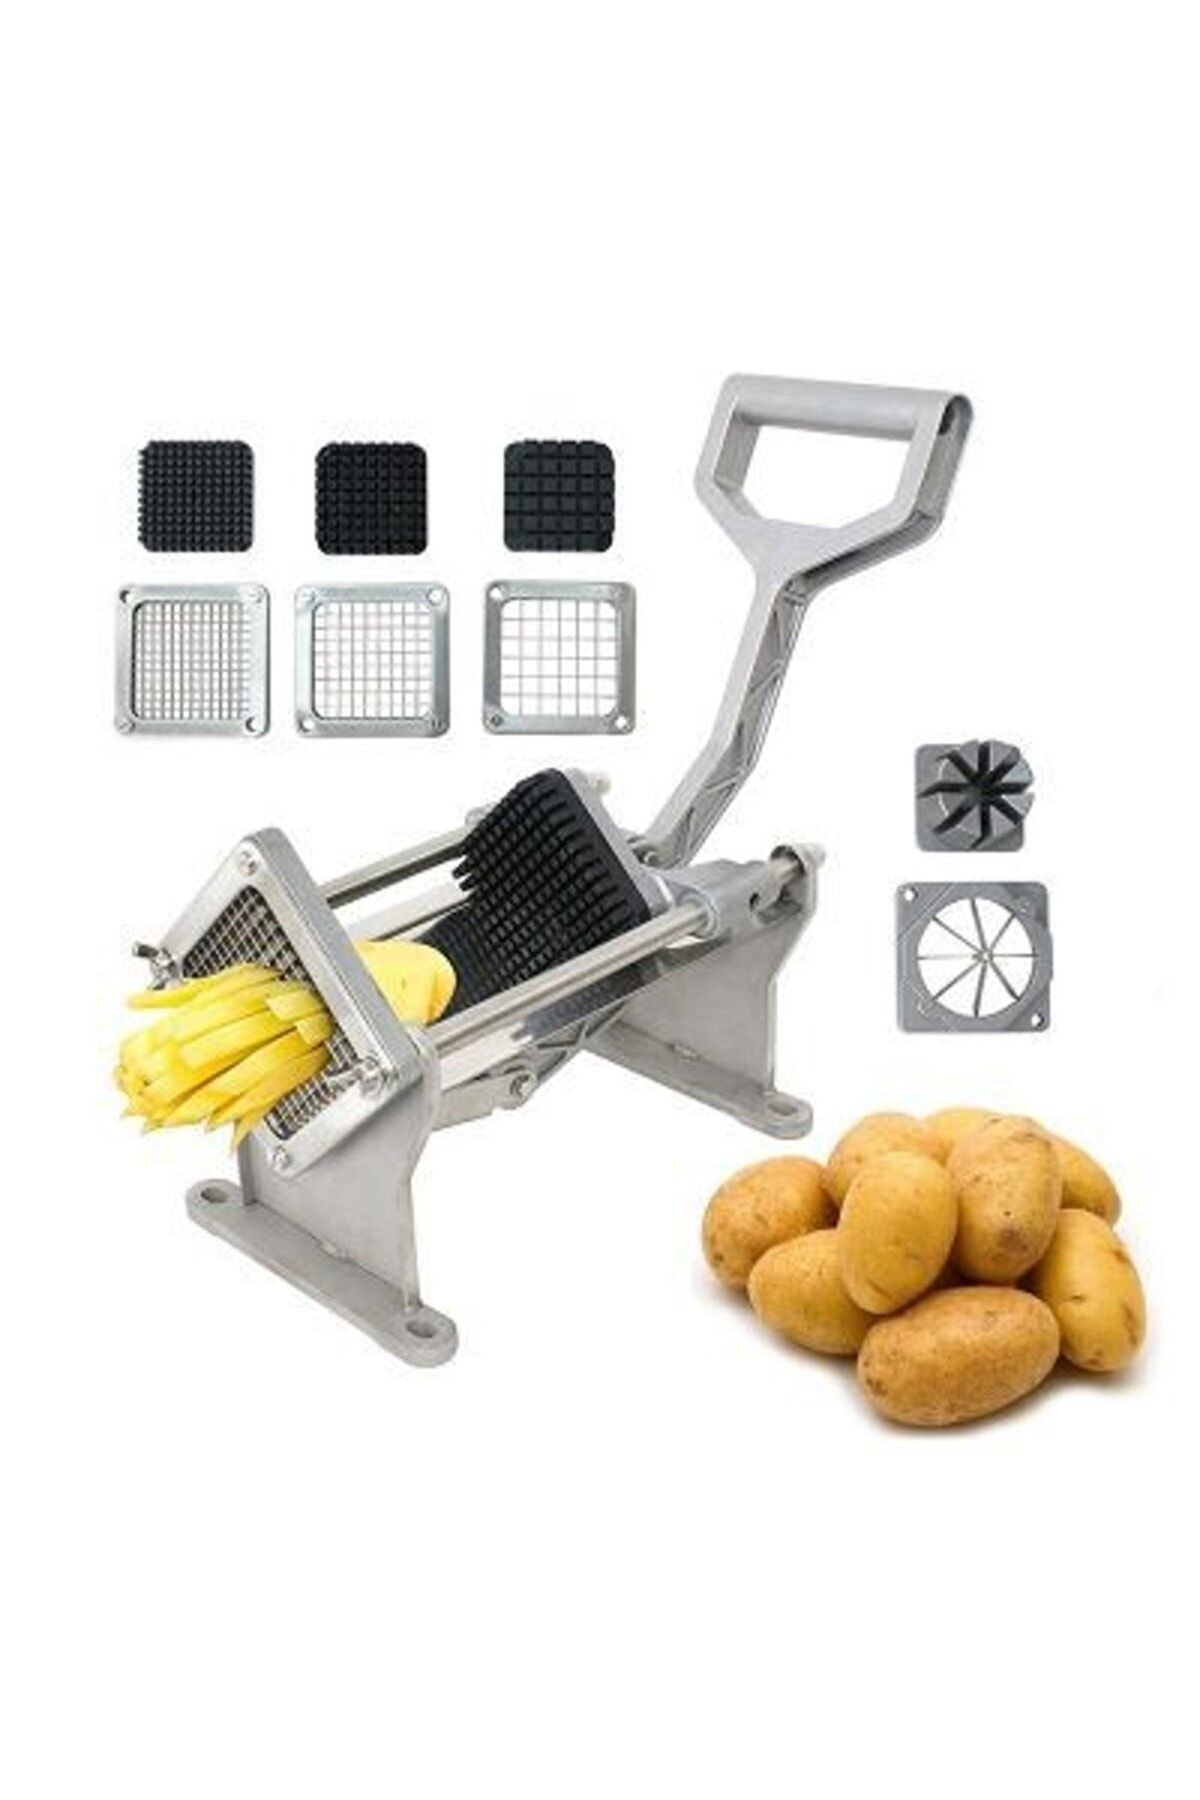 DURNES - Mateka Kollu Patates Dilimleme Makinesi Vc1 (3 Farklı Bıçak Ve Elma Dilimleme Bıçağı Dahil)